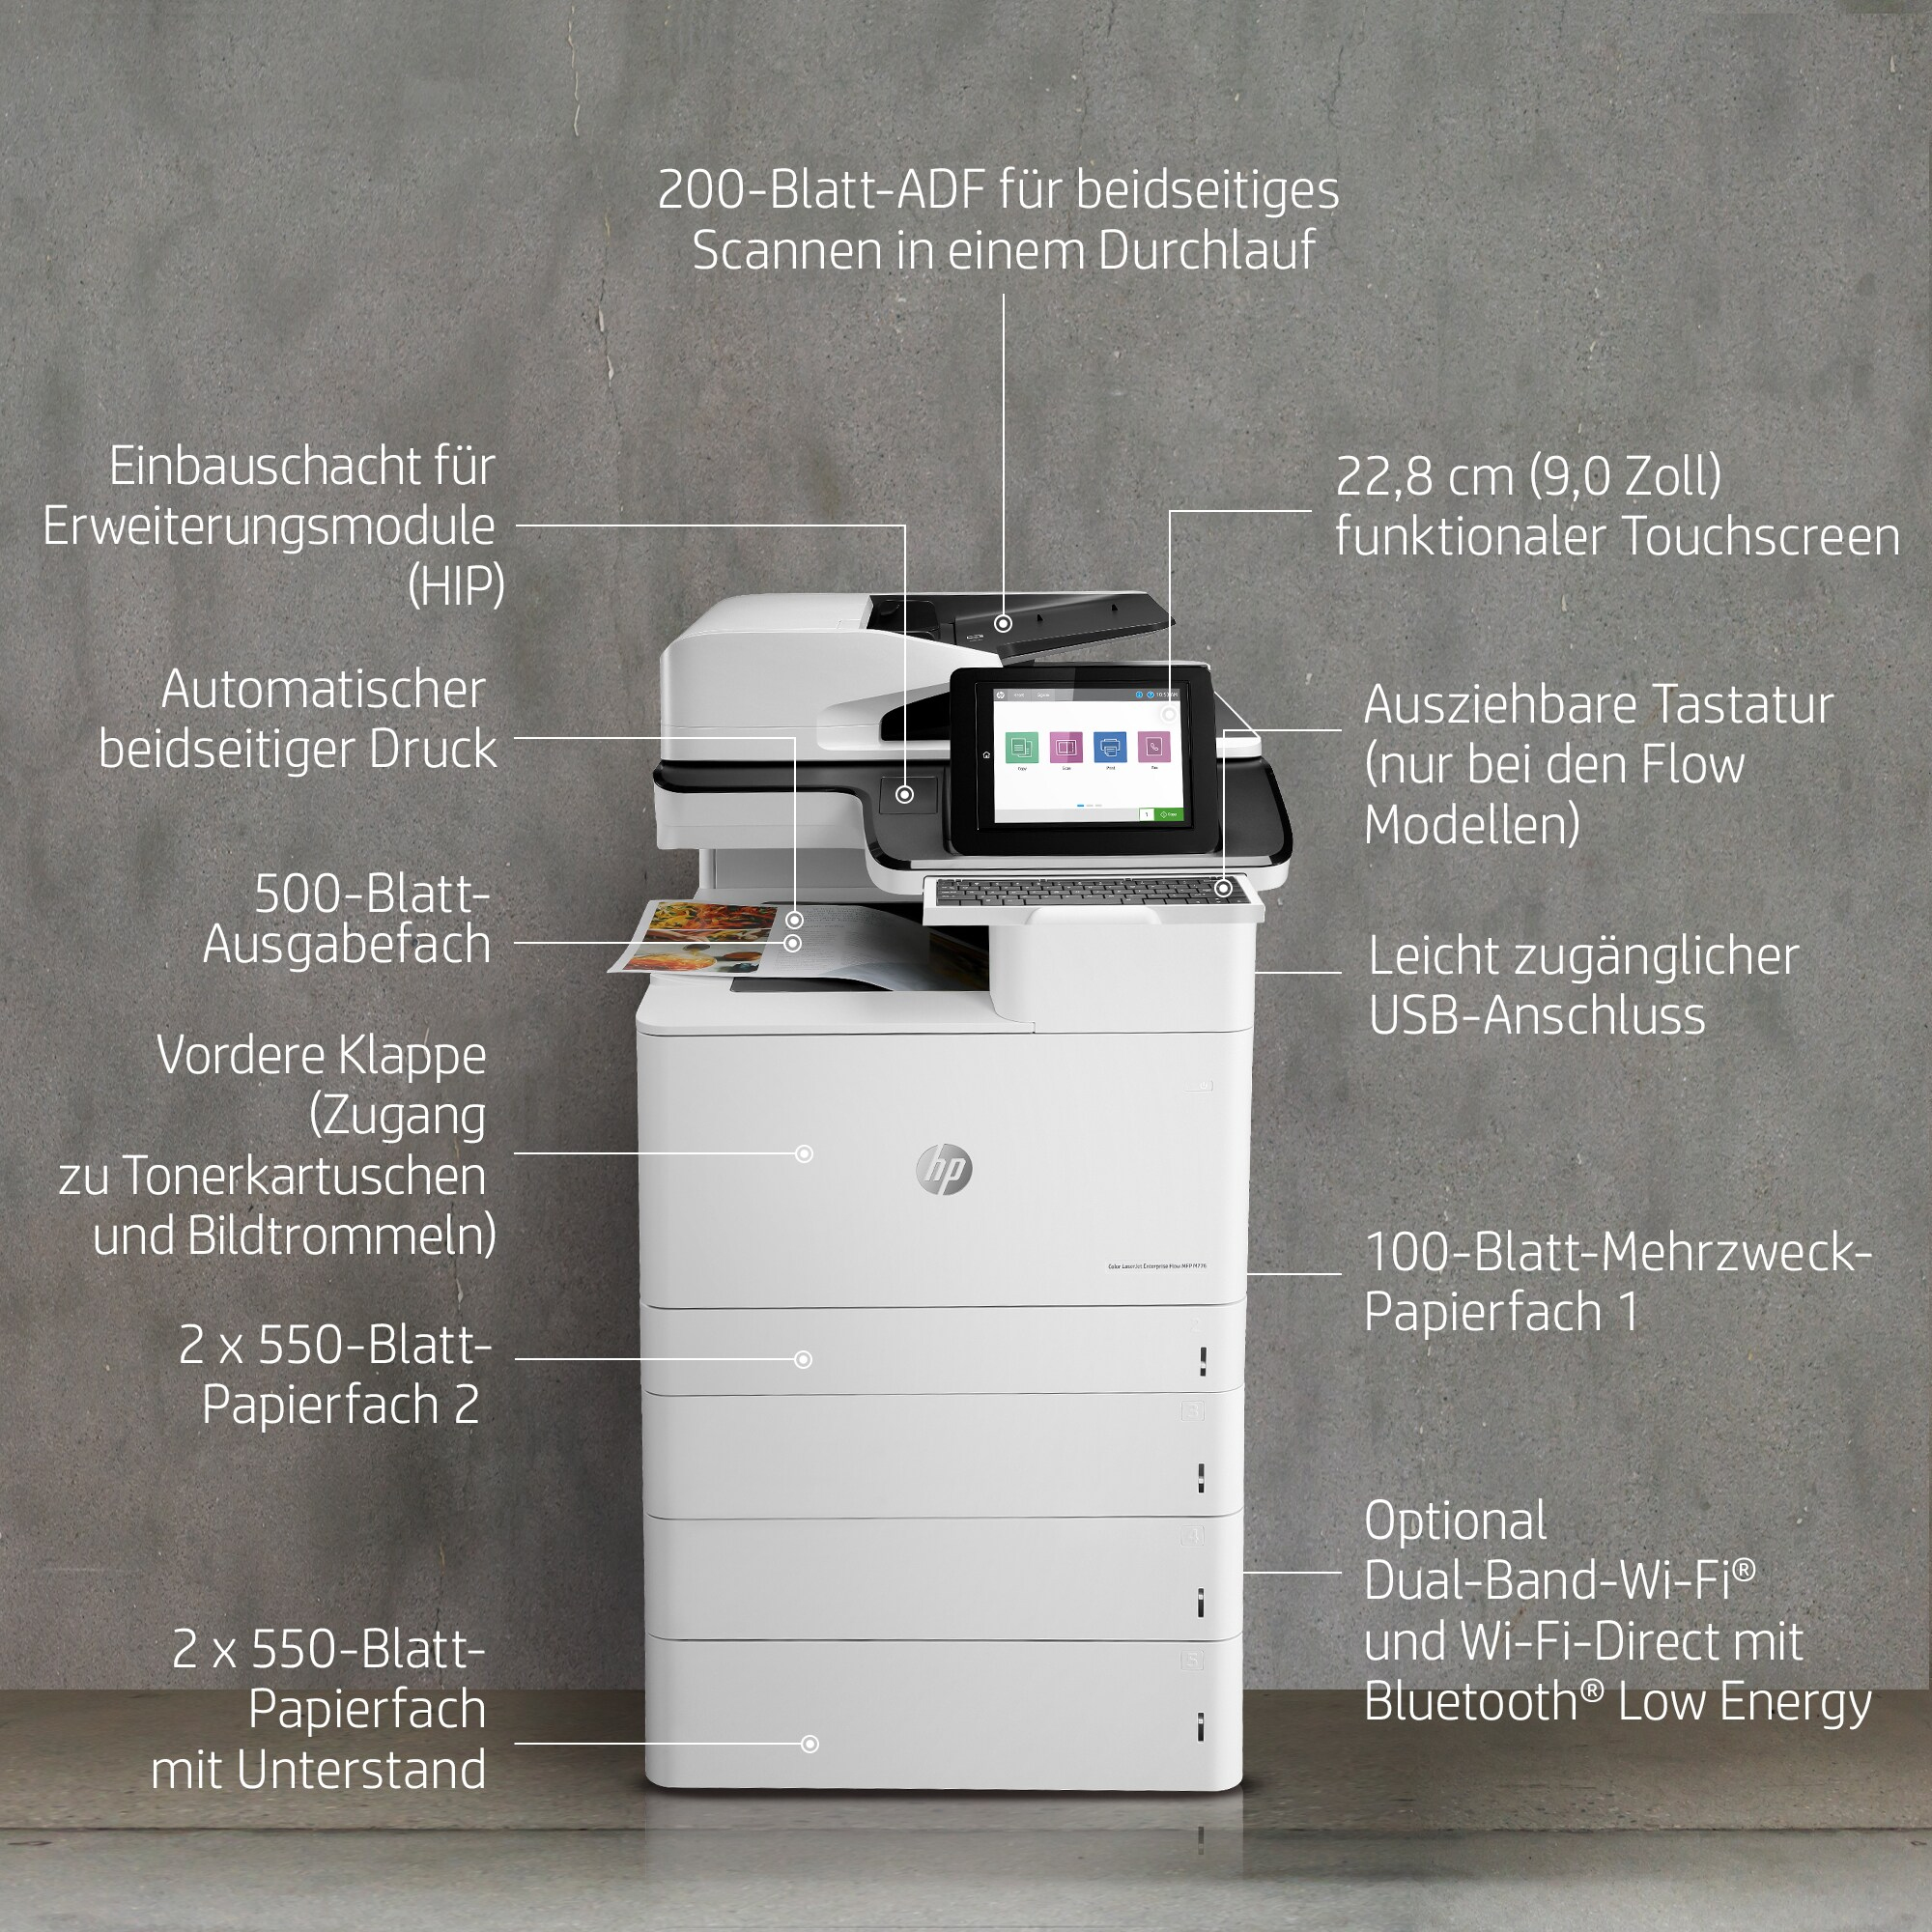 HP LaserJet Enterprise Flow MFP M776z - Multifunktionsdrucker - Farbe - Laser - 297 x 864 mm (Original)